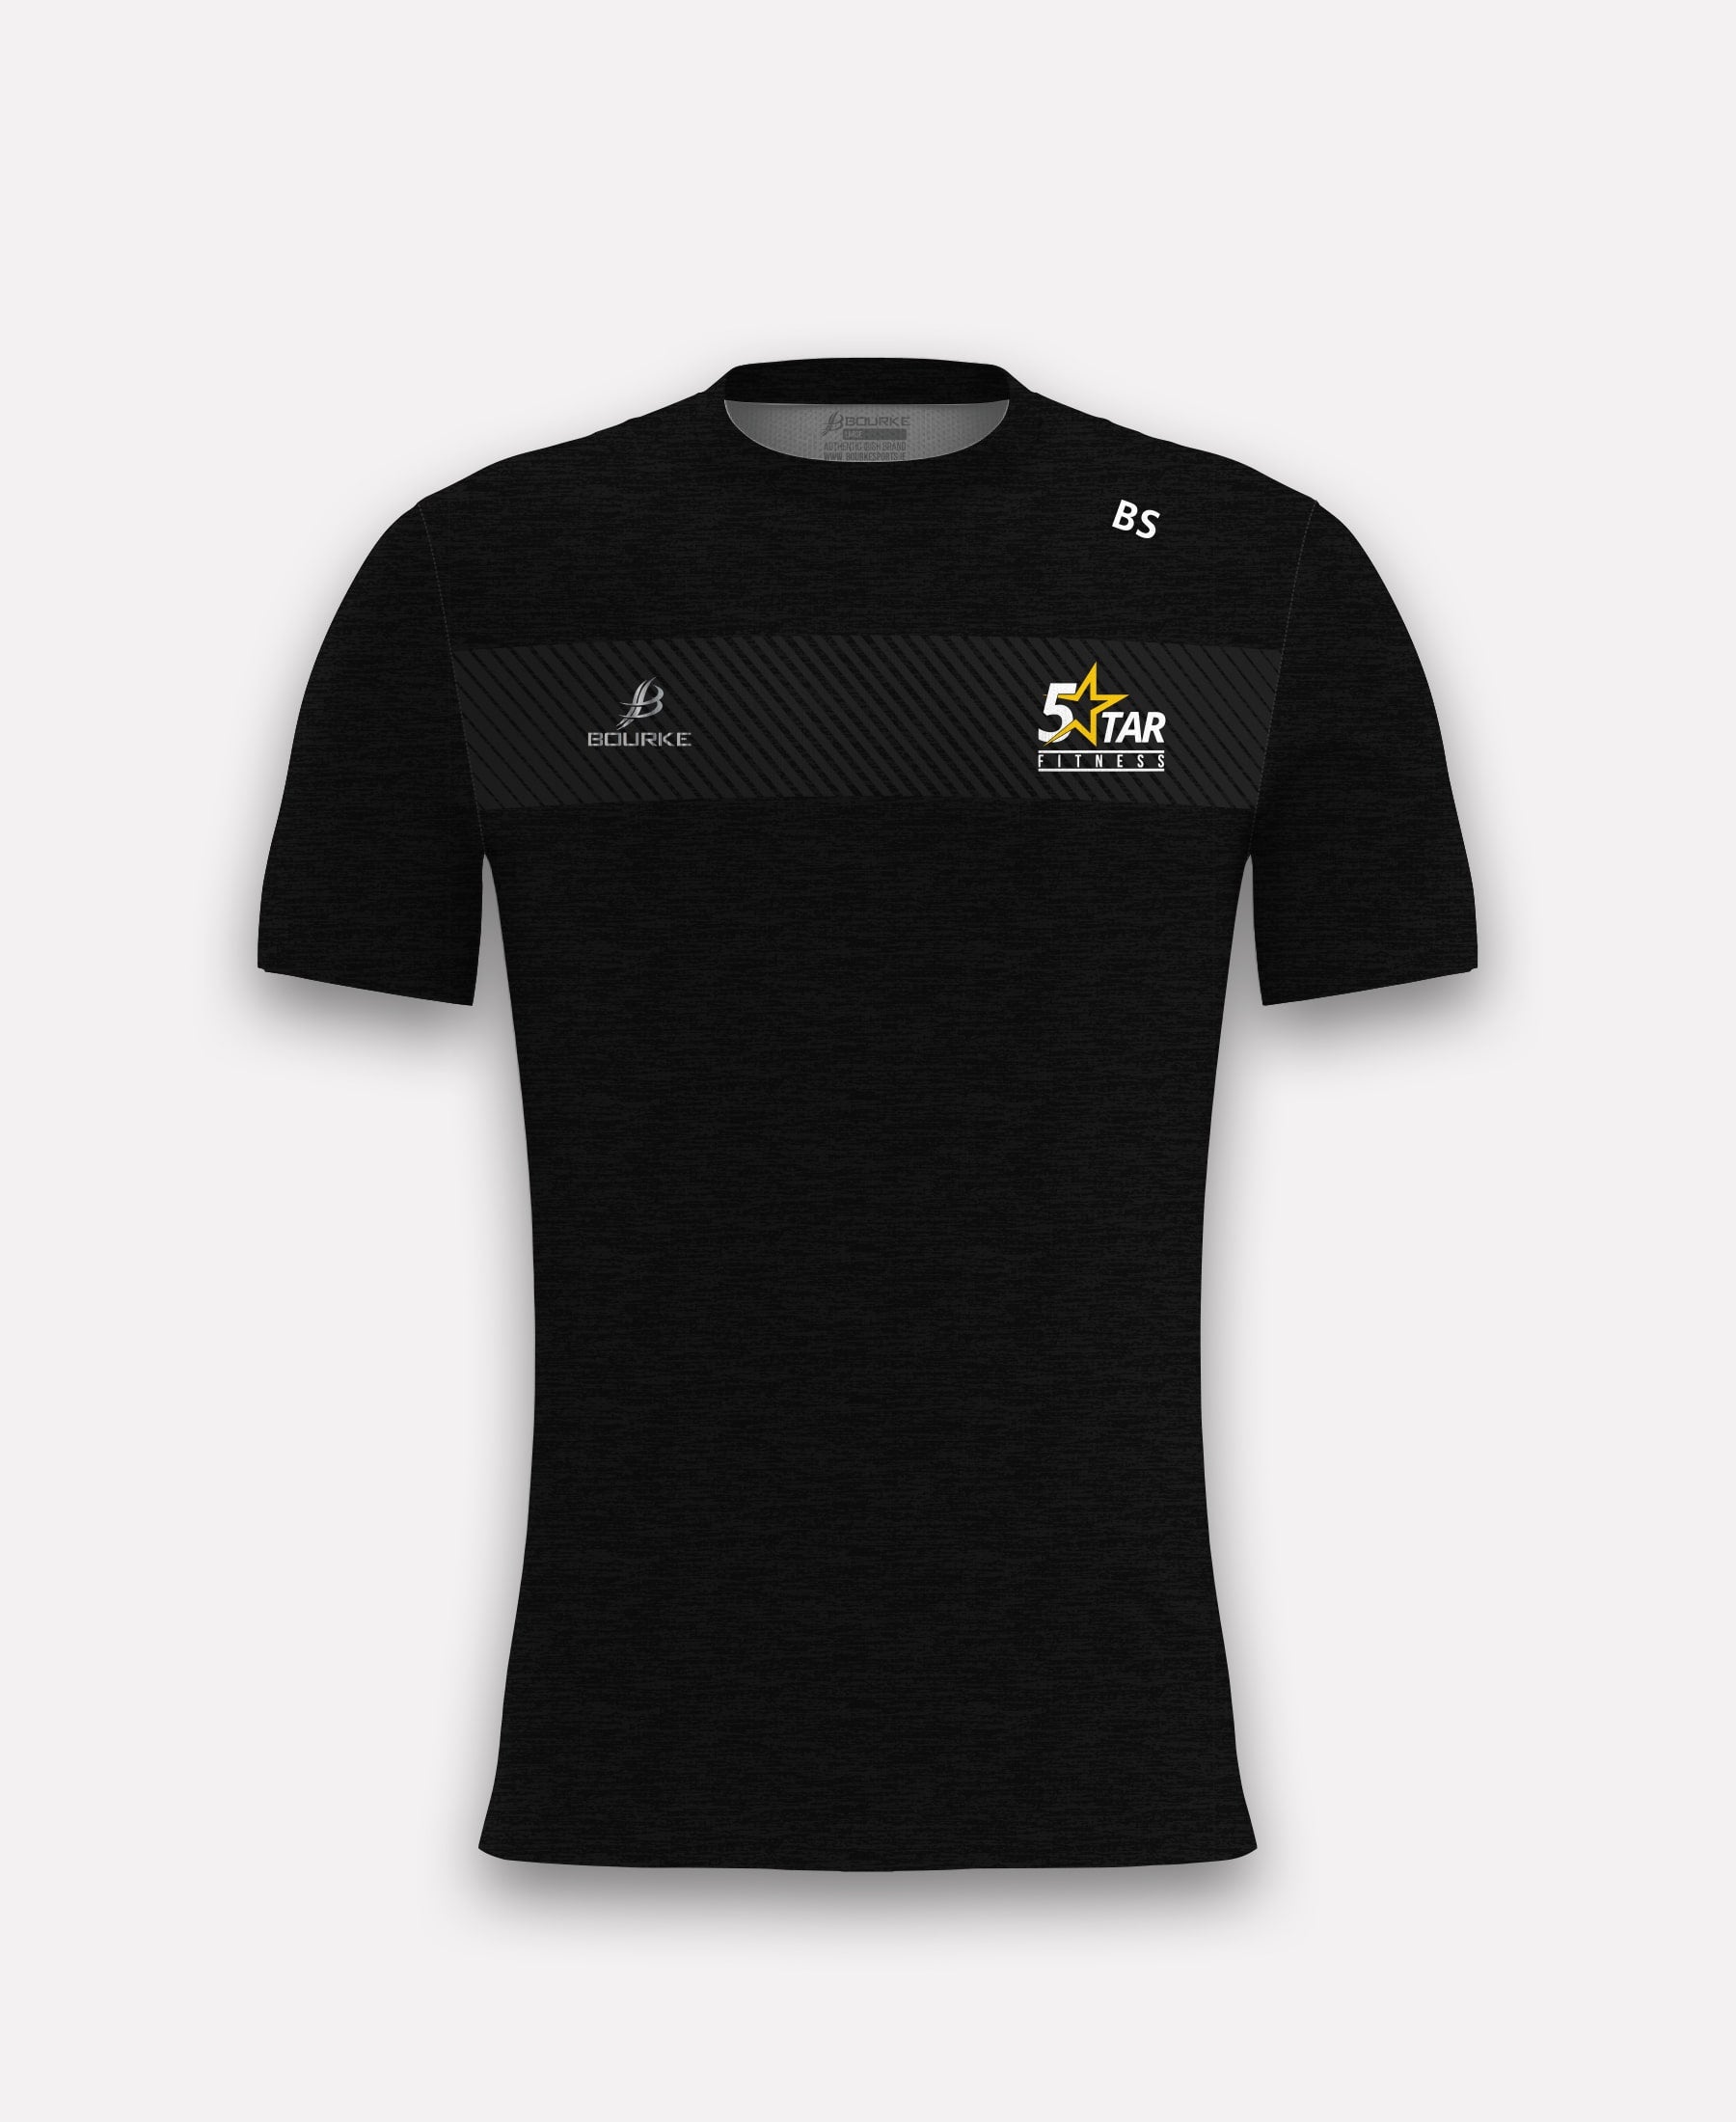 5 Star Fitness TACA T-Shirt (Black)